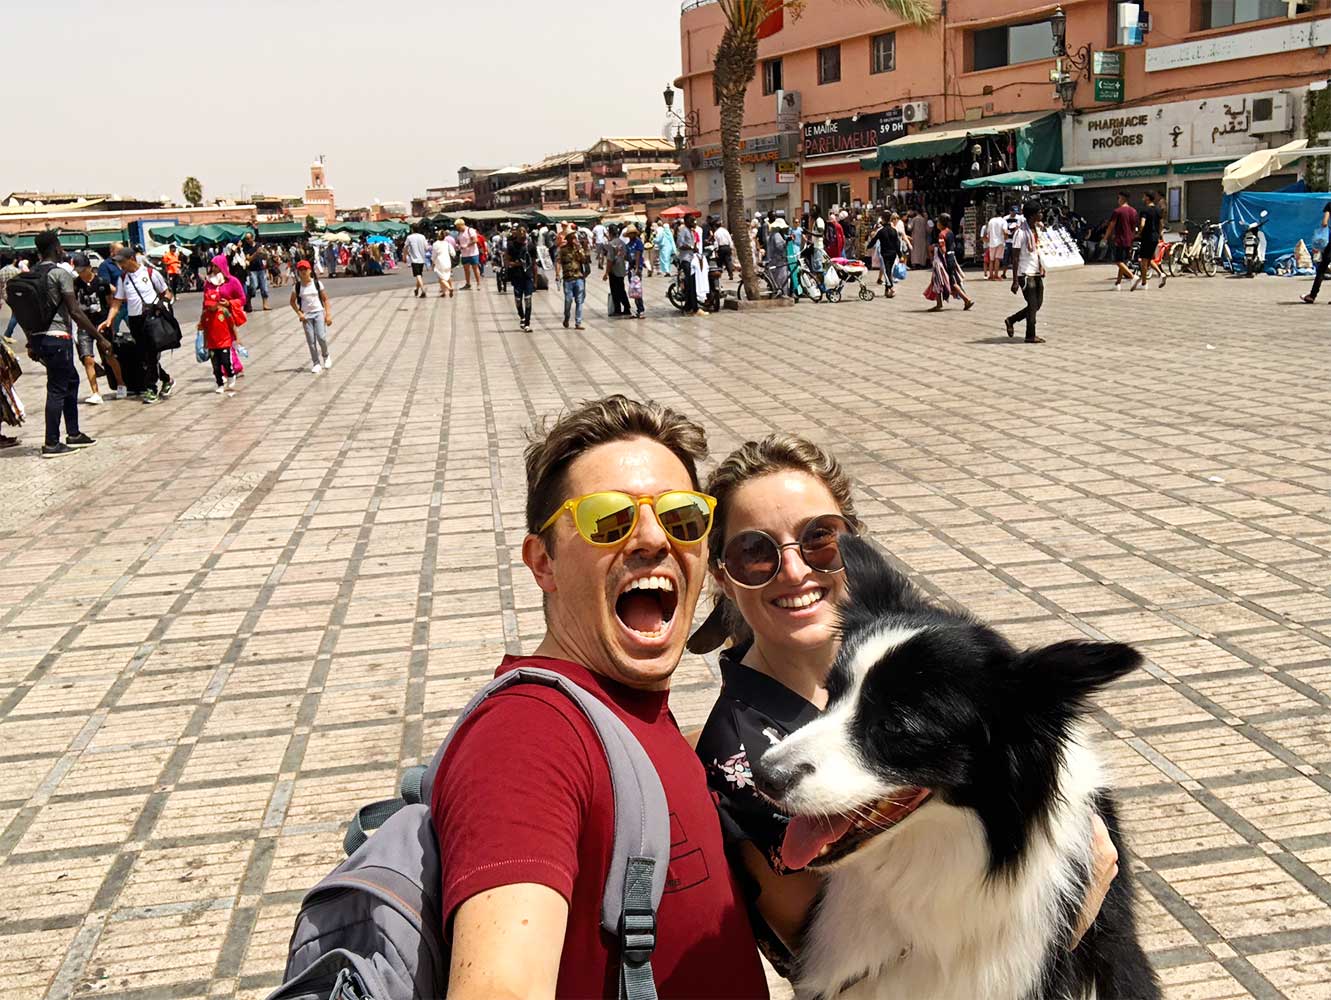 Pedro, Sara and Rafa next to the Jemaa el Fna market in Marrakech